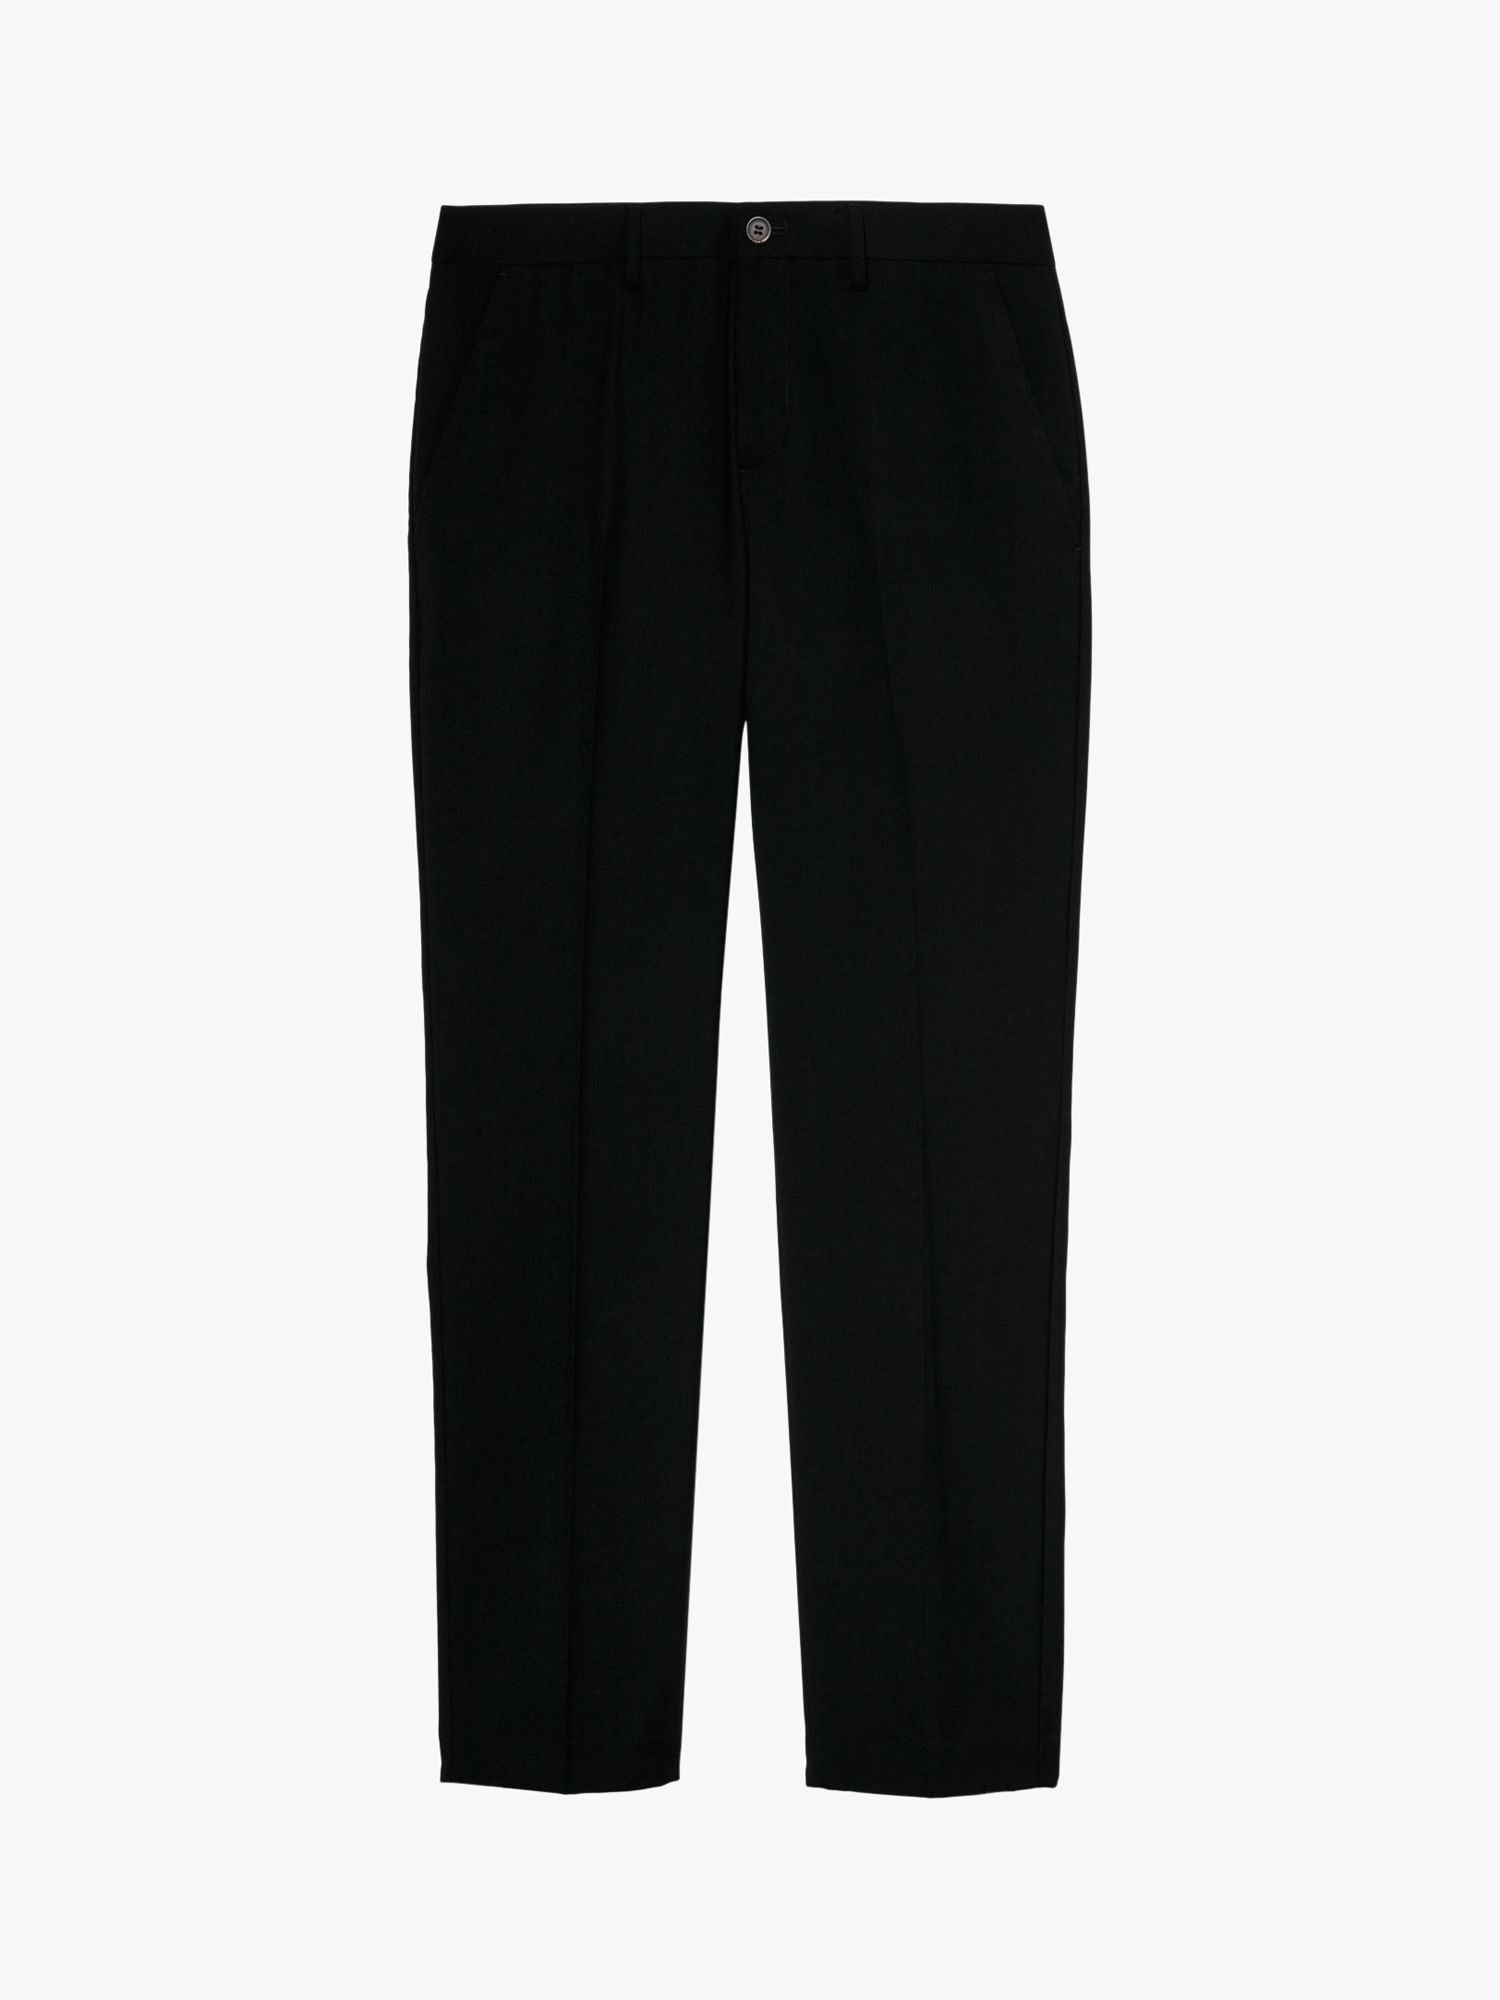 Buy SISLEY Formal Slim Fit Trousers, Black Online at johnlewis.com